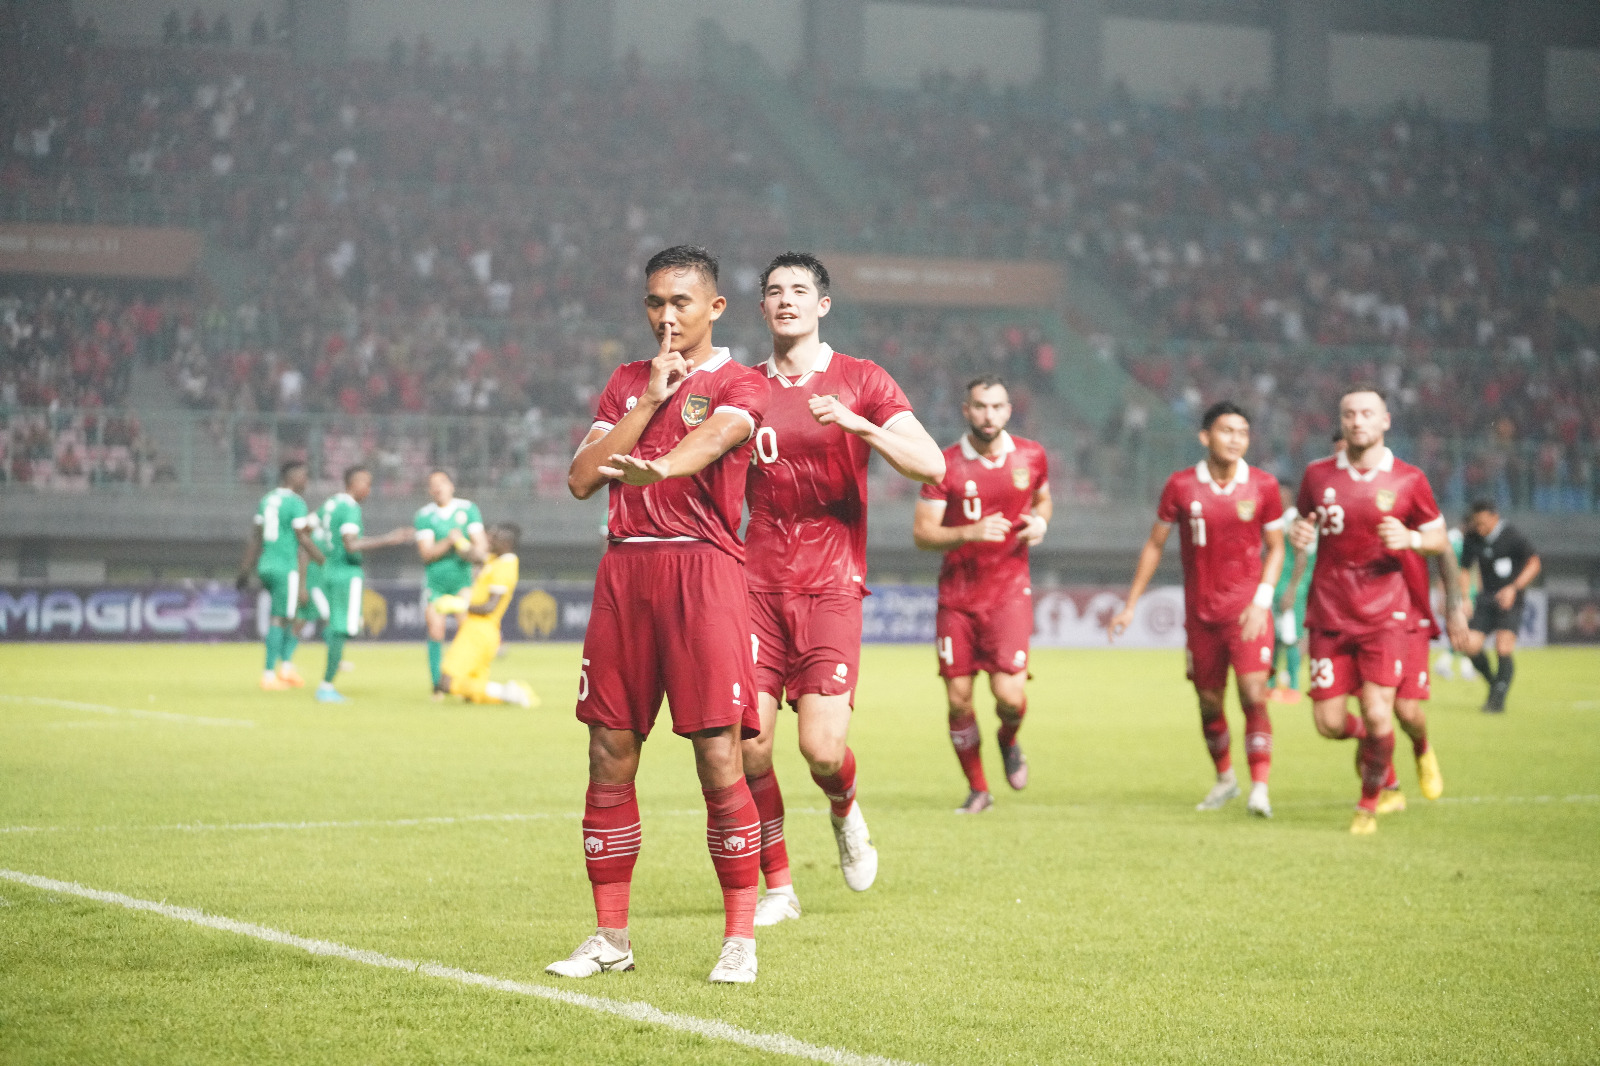 Tiket Laga Indonesia vs Brunei Darussalam di GBK Sudah Dijual, Harga Mulai Rp 125 Ribuan